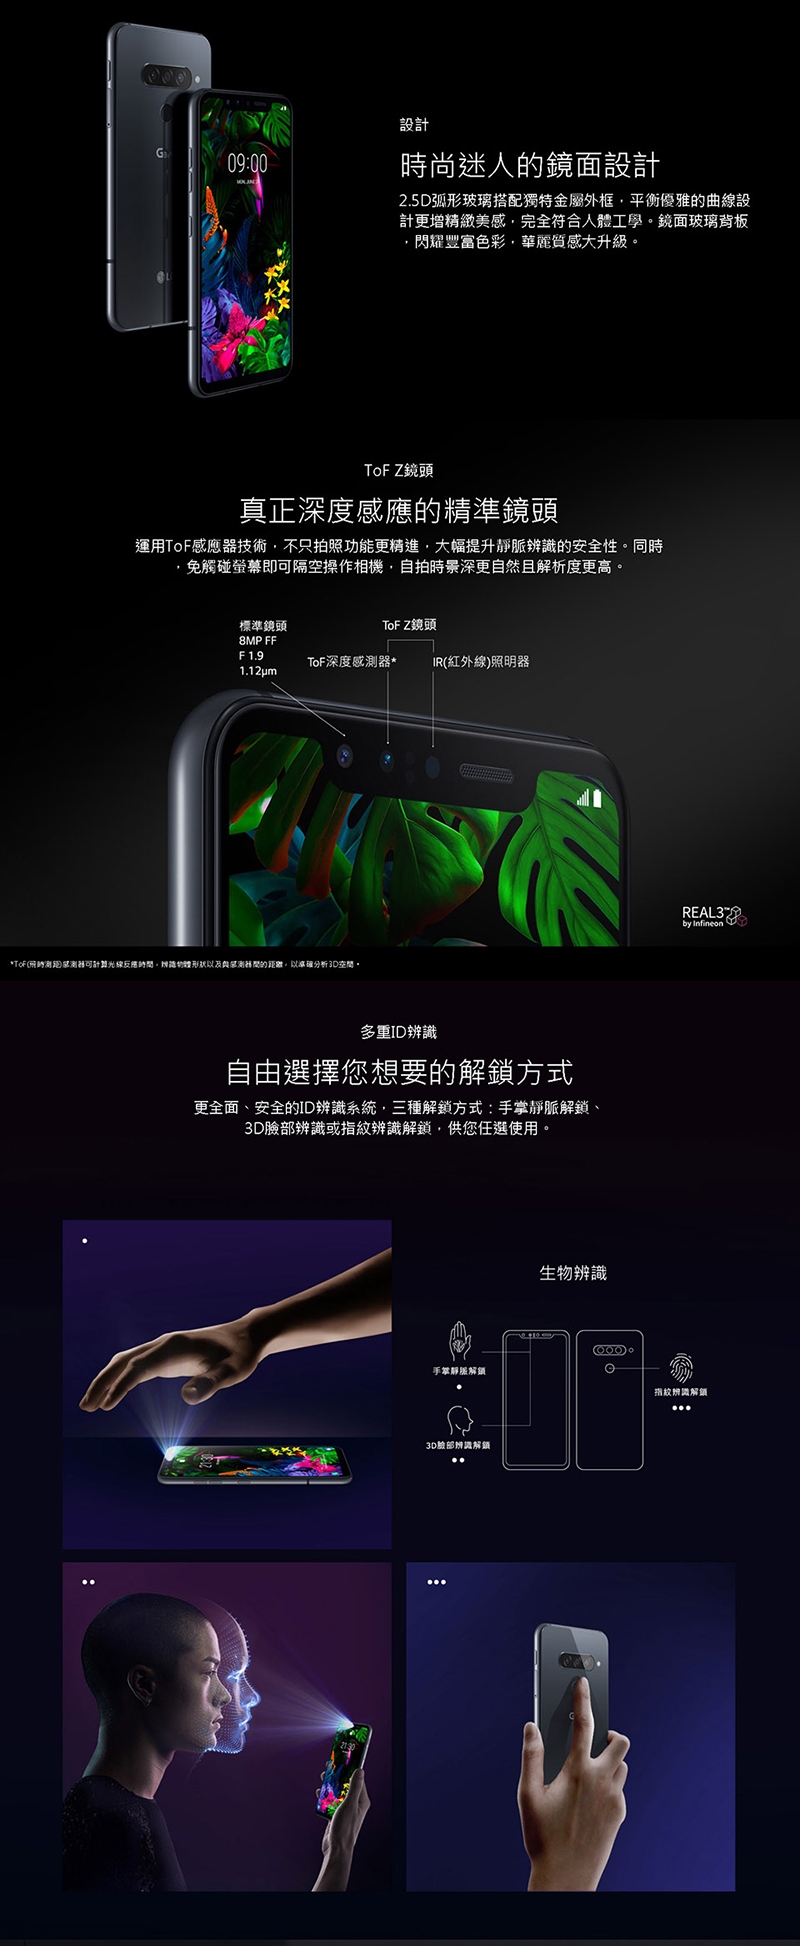 LG G8s ThinQ (6G/128G) 6.2吋 後置三鏡頭智慧型手機